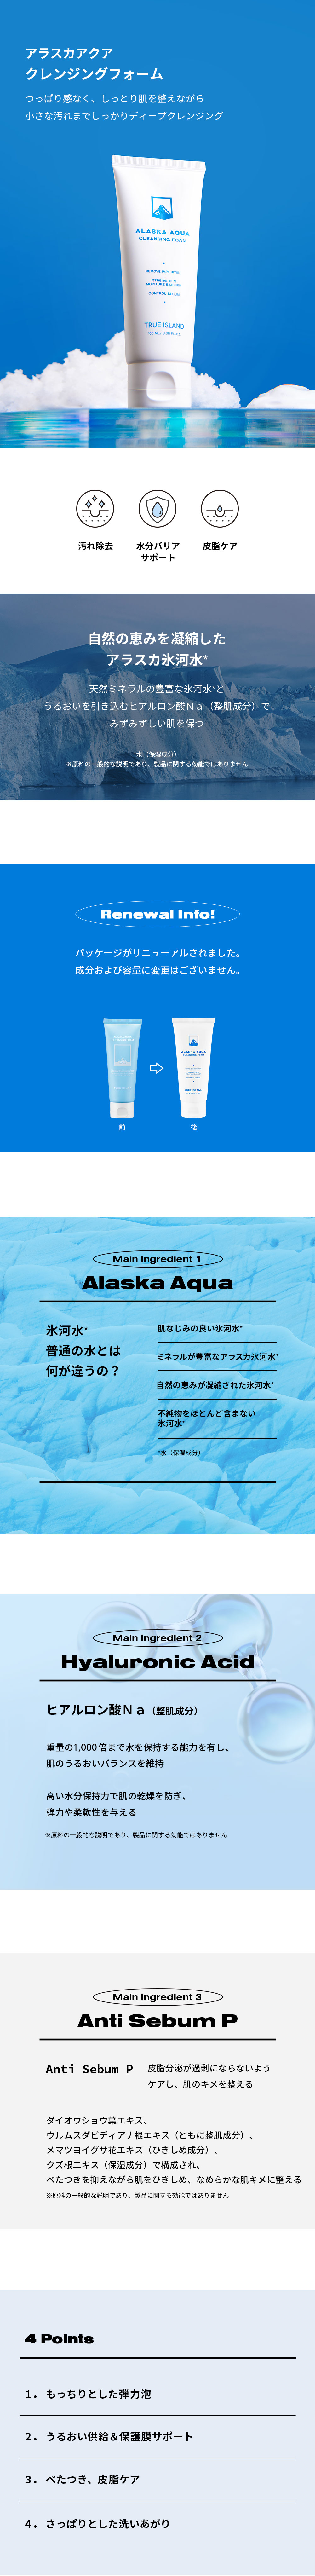 [トゥルーアイランド]アラスカアクアクレンジングフォーム | 詳細画像2